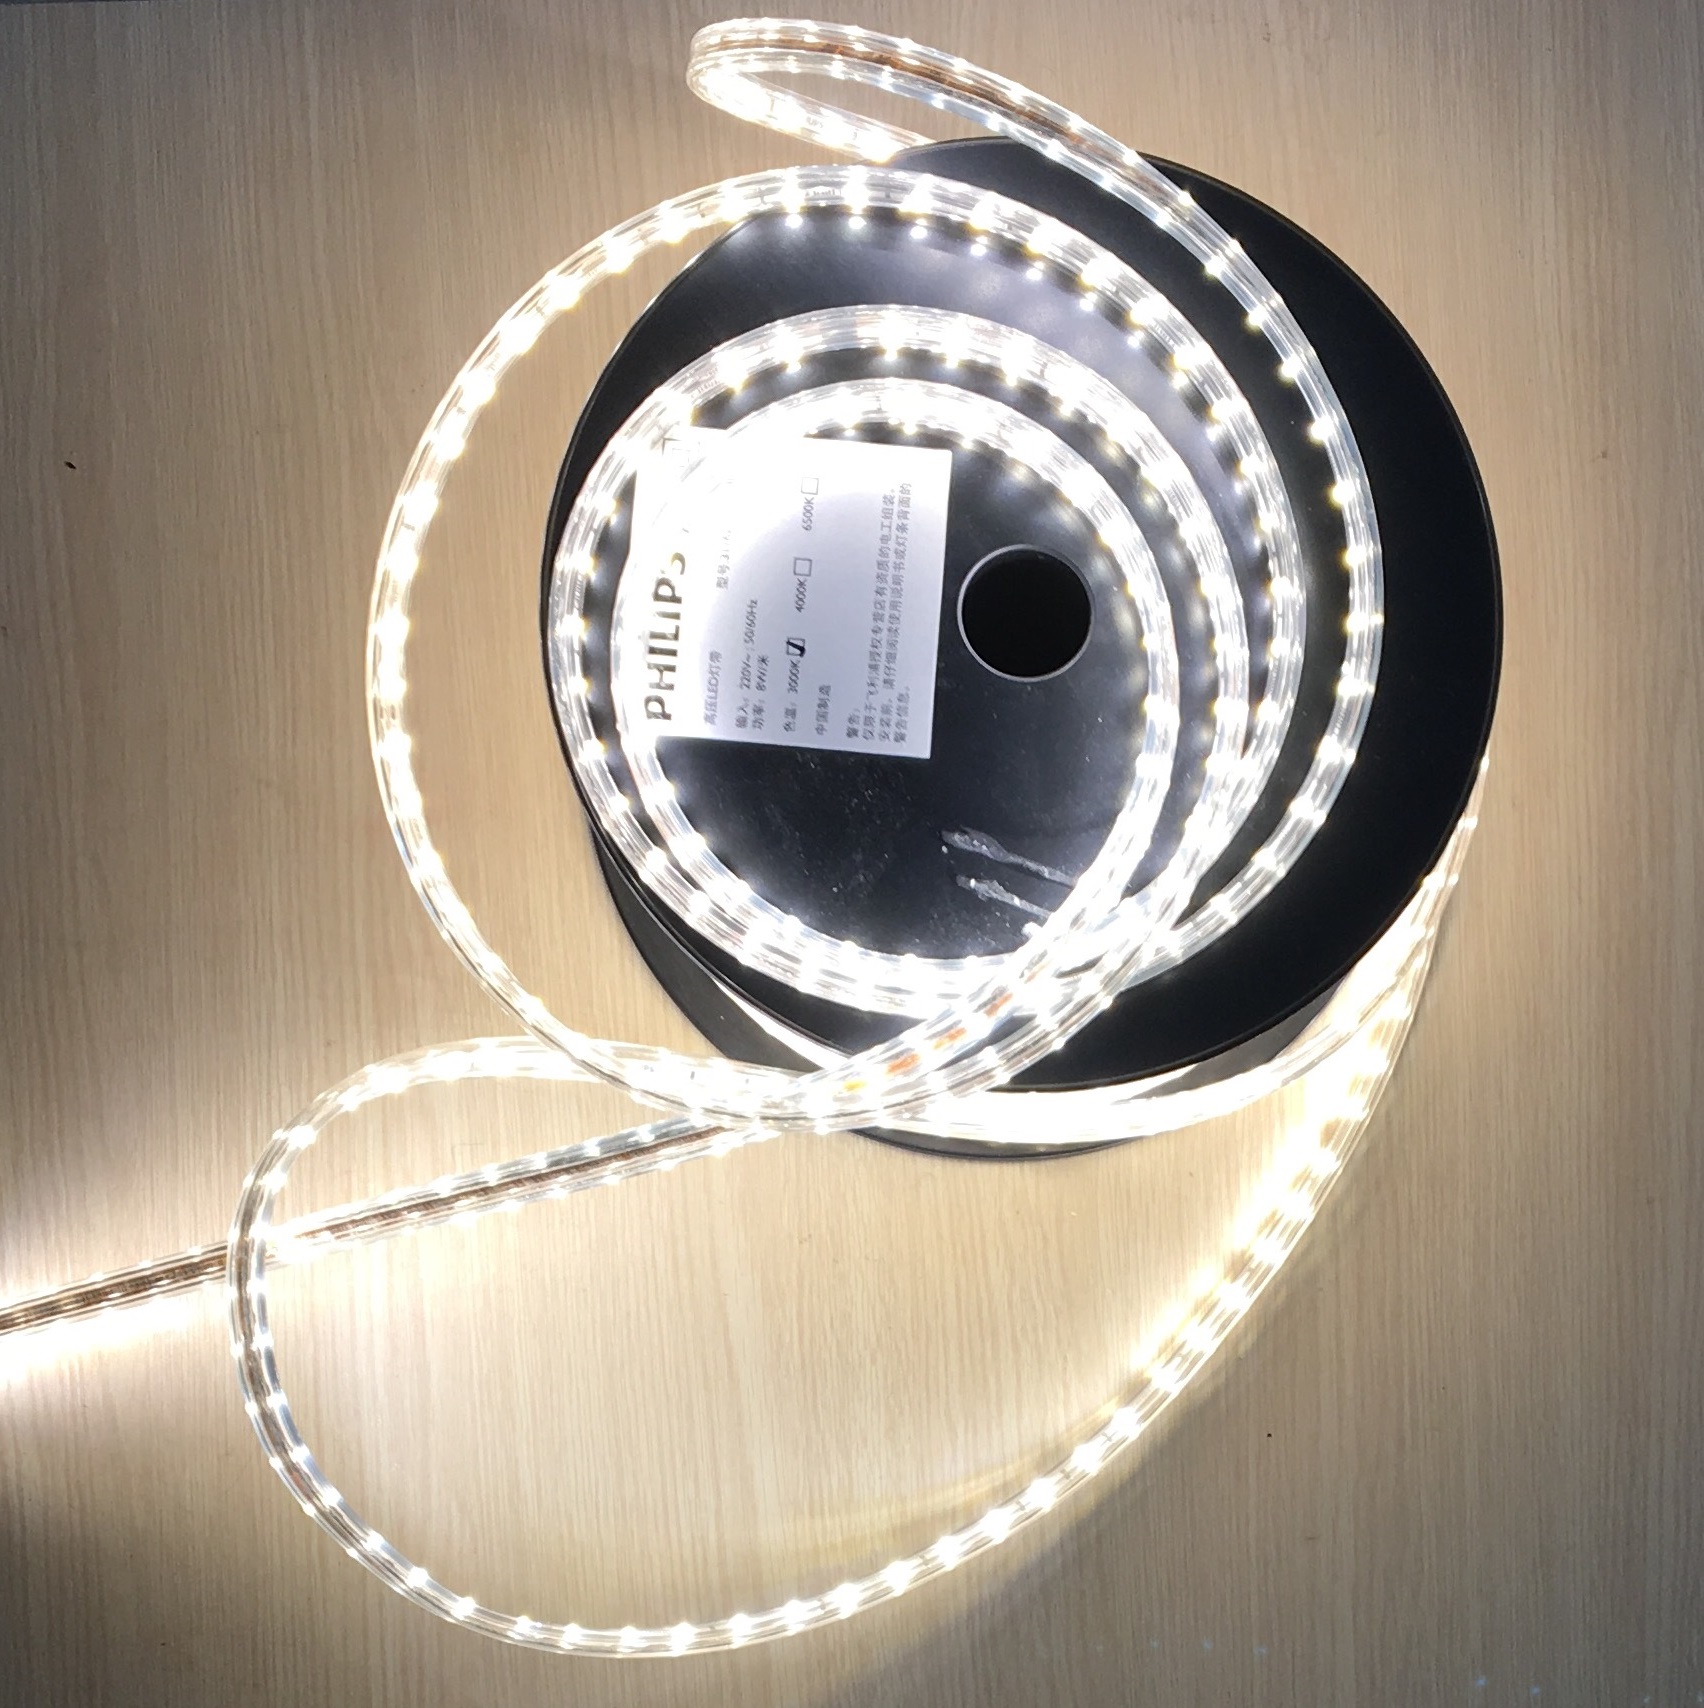 Đèn Led dây Philips 31161 trang trí hắt trần: Đèn Led dây Philips 31161 sẽ khiến cho nhà của bạn trở nên độc đáo và ấn tượng. Với ánh sáng trắng tinh khiết và thiết kế sang trọng, đèn Led này là lựa chọn hoàn hảo cho những ai mong muốn tạo nên một không gian sống độc đáo và đẹp mắt.